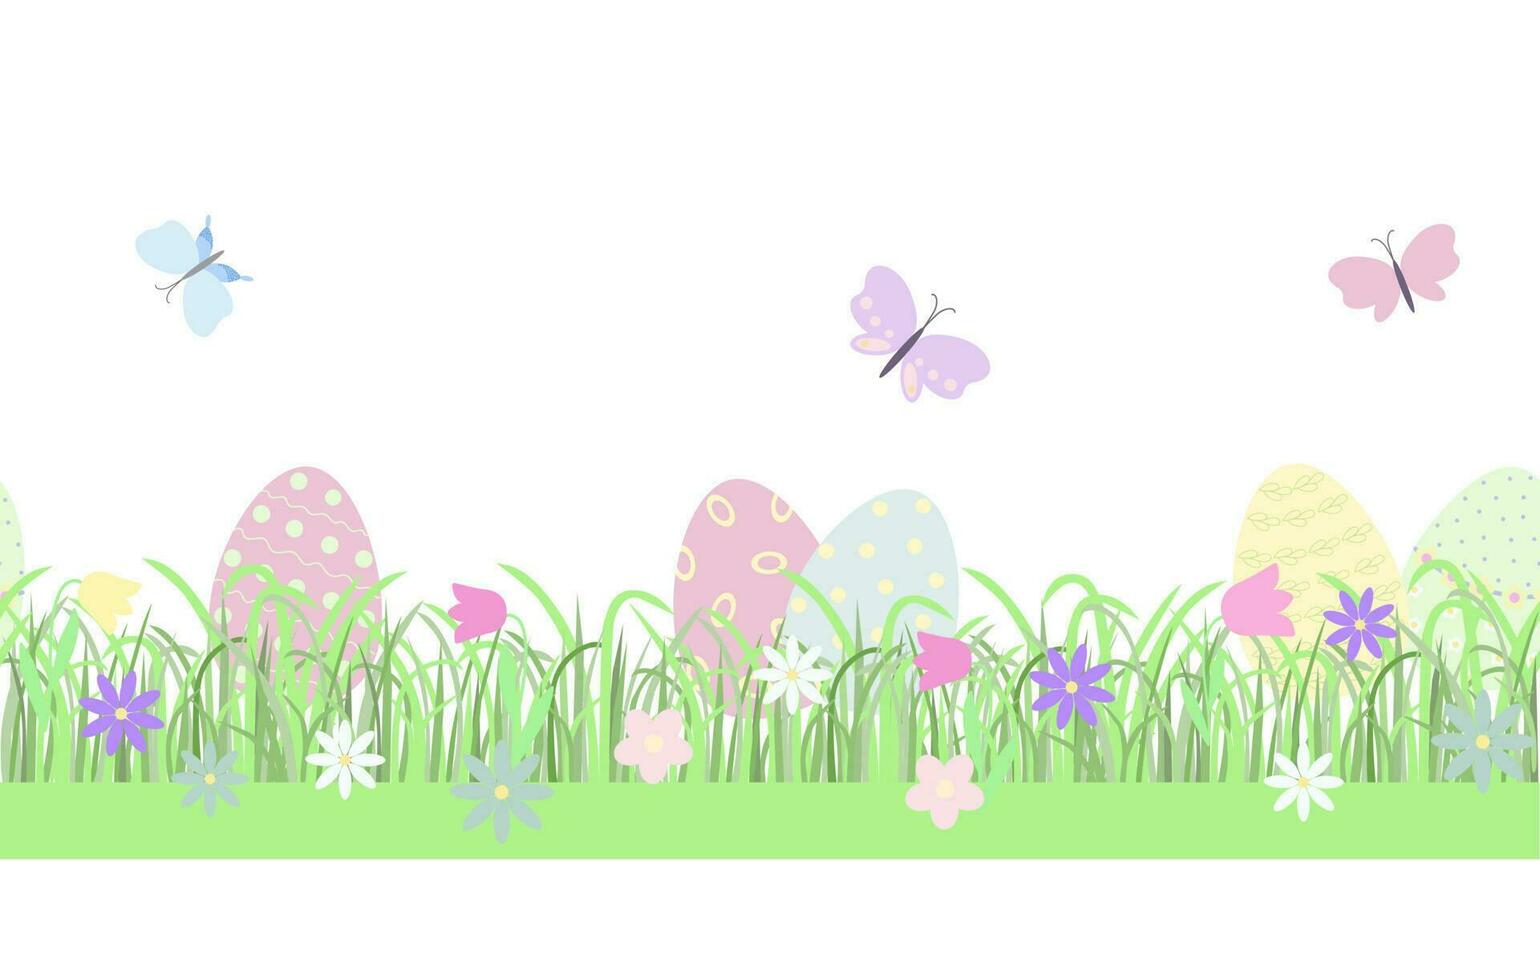 Pasen bloemen samenstelling eieren, vlinders, vroeg voorjaar gras met schattig bloemen naadloos horizontaal grens, vlak stijl vector illustratie voorjaar feestelijk decor, kaarten, poster, spandoeken, web ontwerp